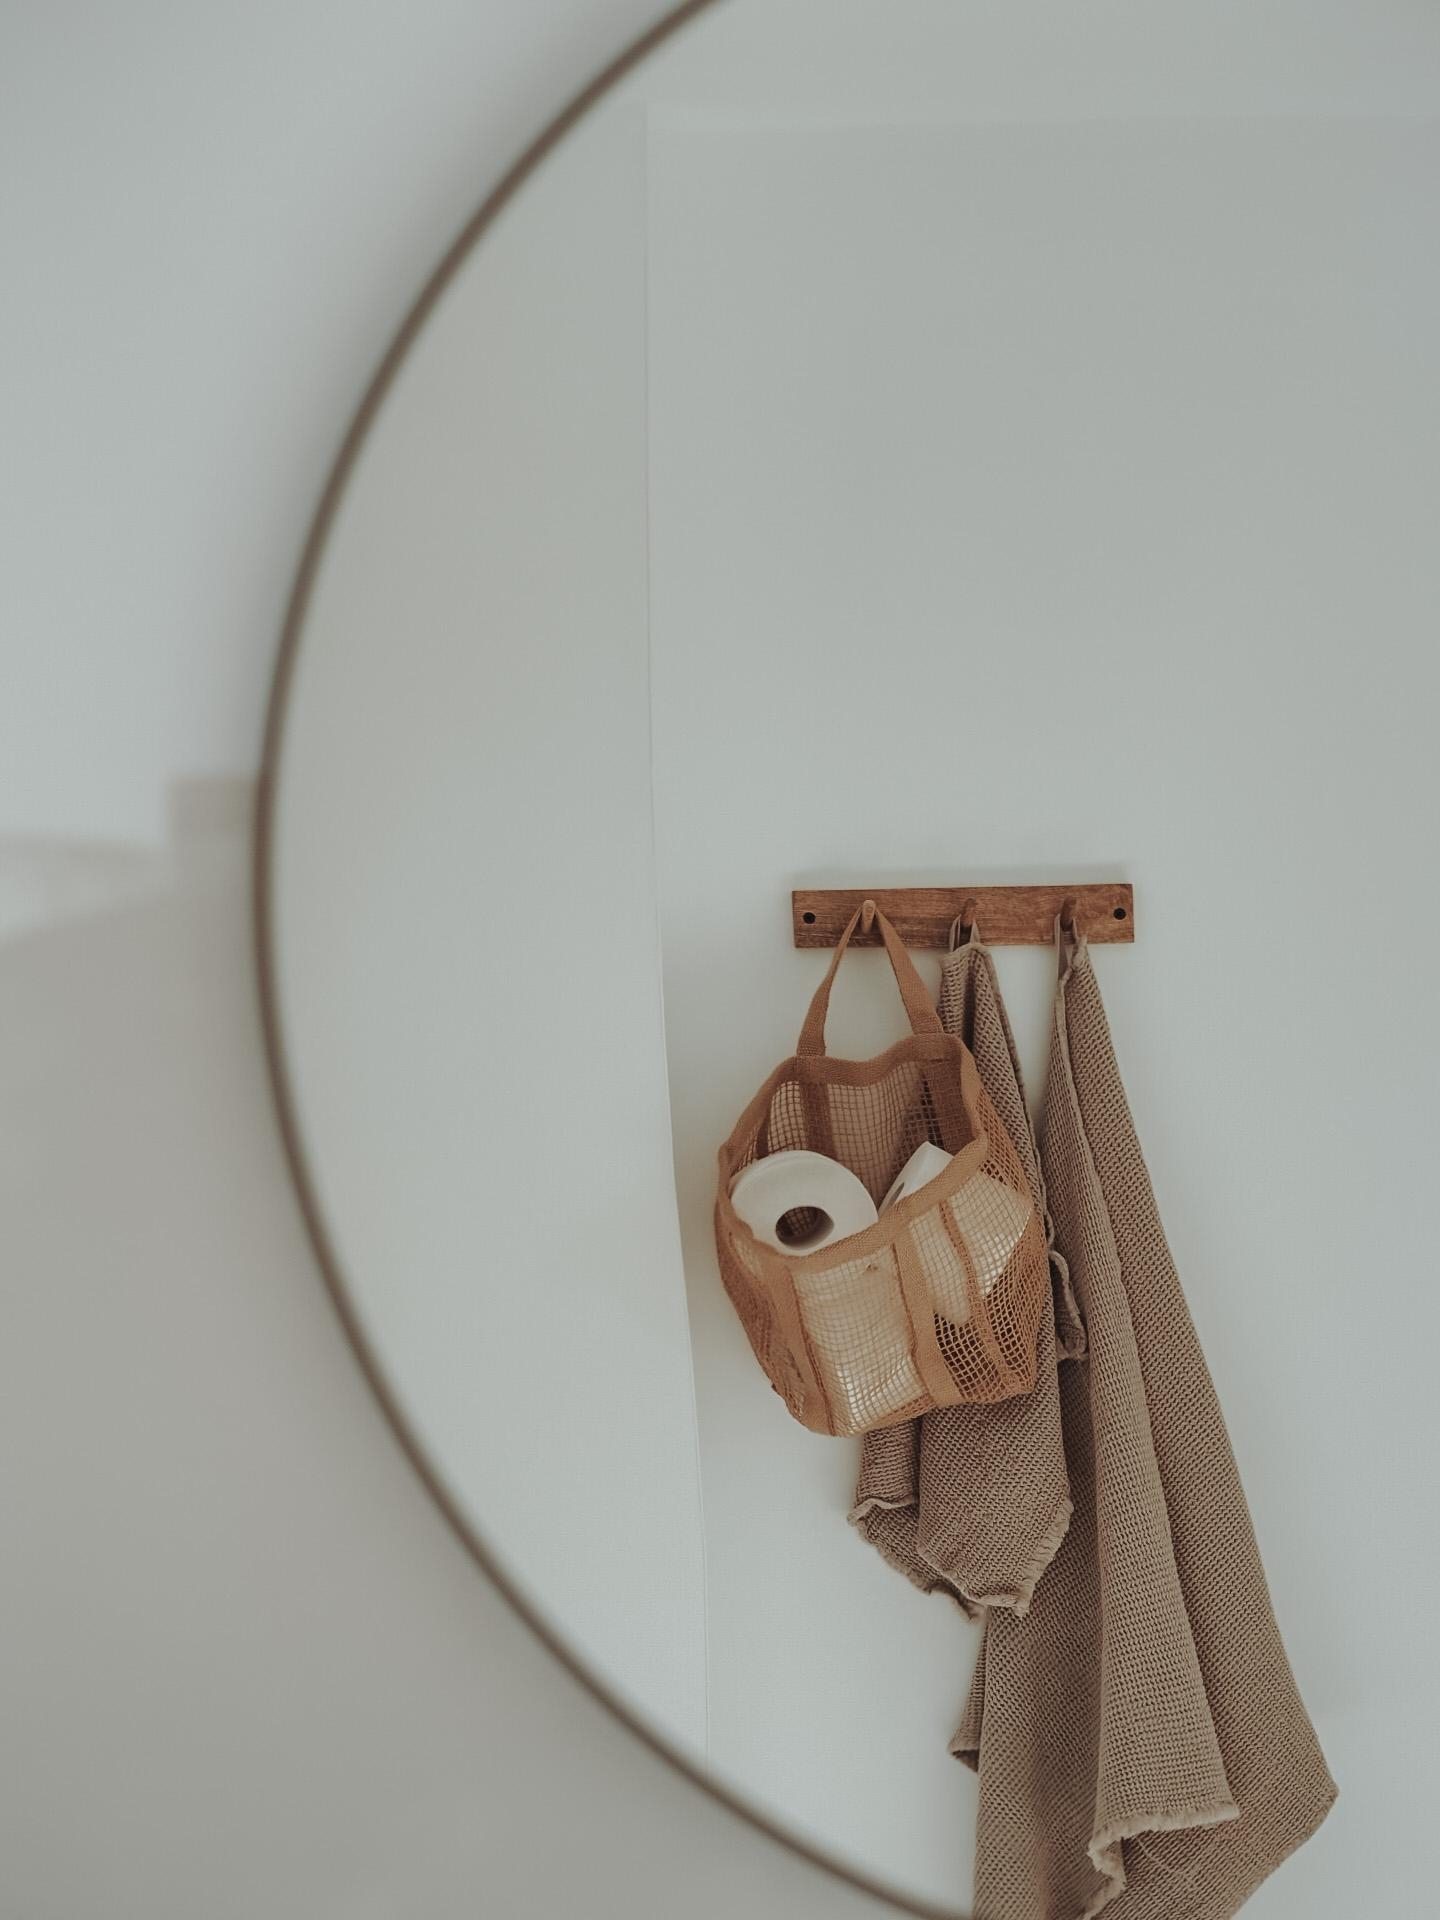 Badezimmer-Details 🤍
#Badezimmer #handtücher #altbau #altescheune #körbe